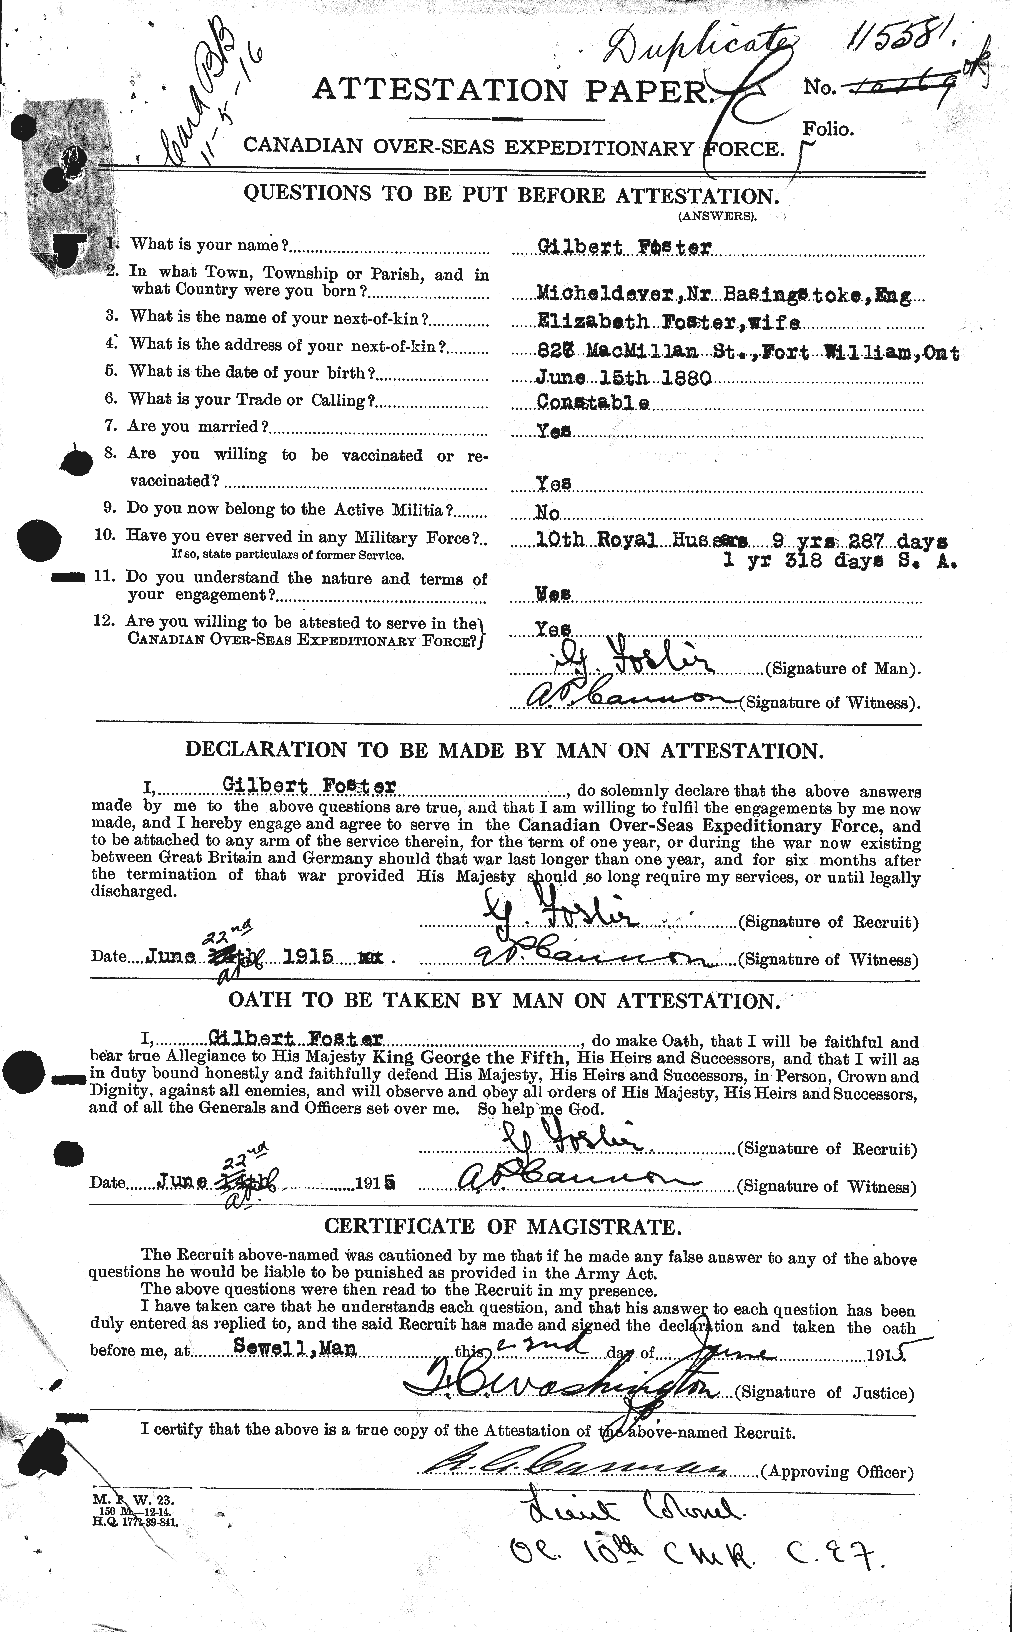 Dossiers du Personnel de la Première Guerre mondiale - CEC 330712a